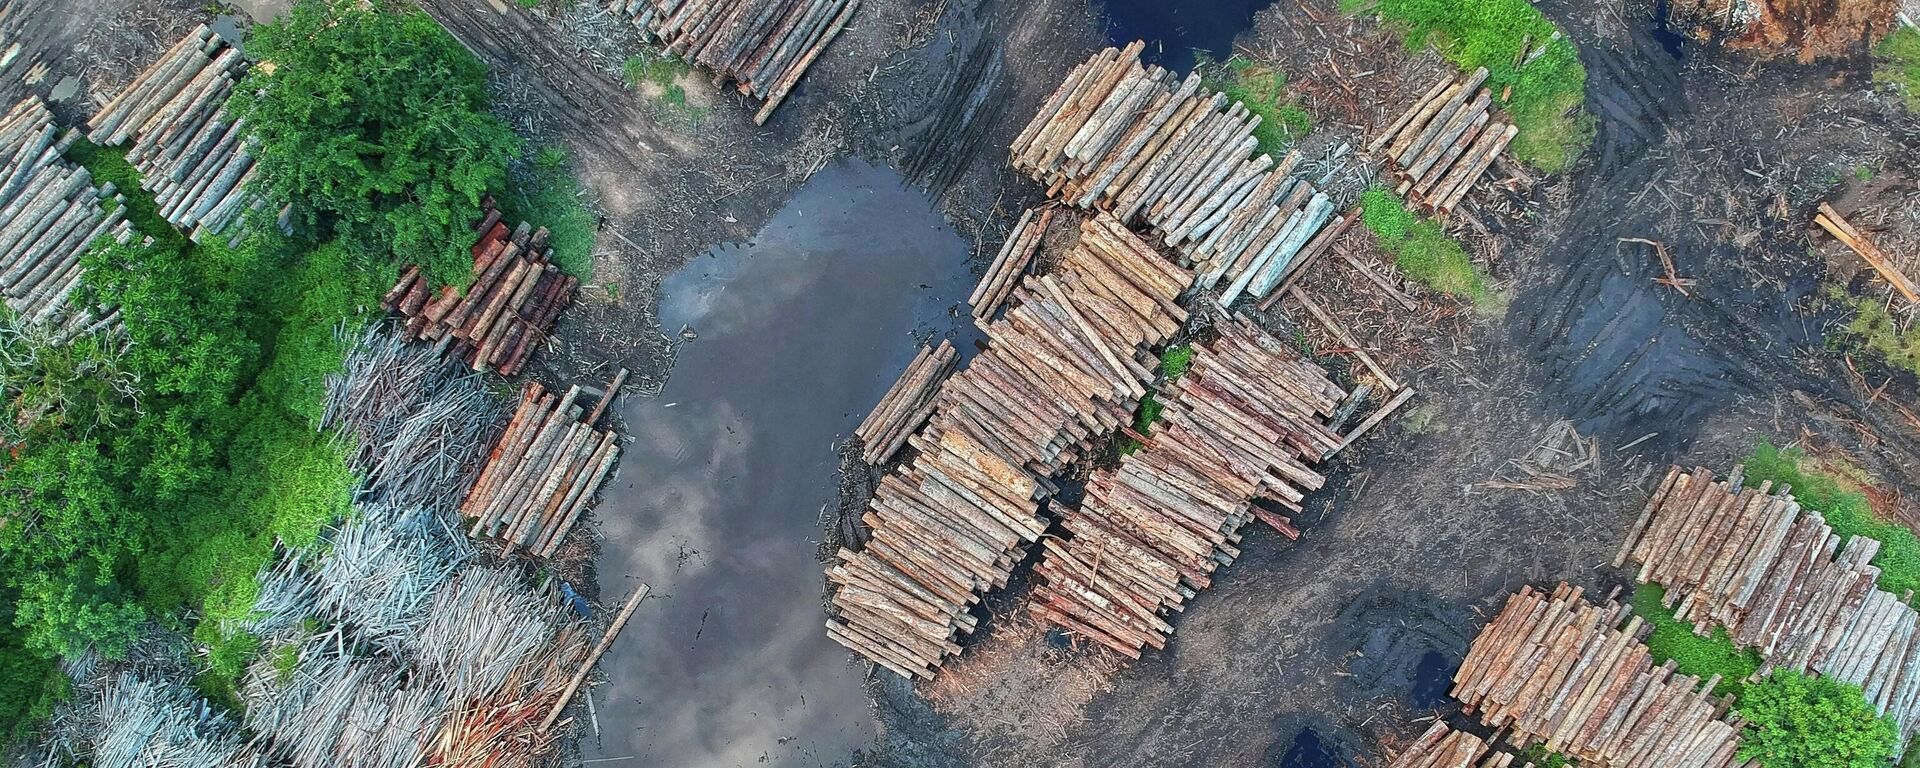 Deforestación, imagen referencial - Sputnik Mundo, 1920, 02.11.2021